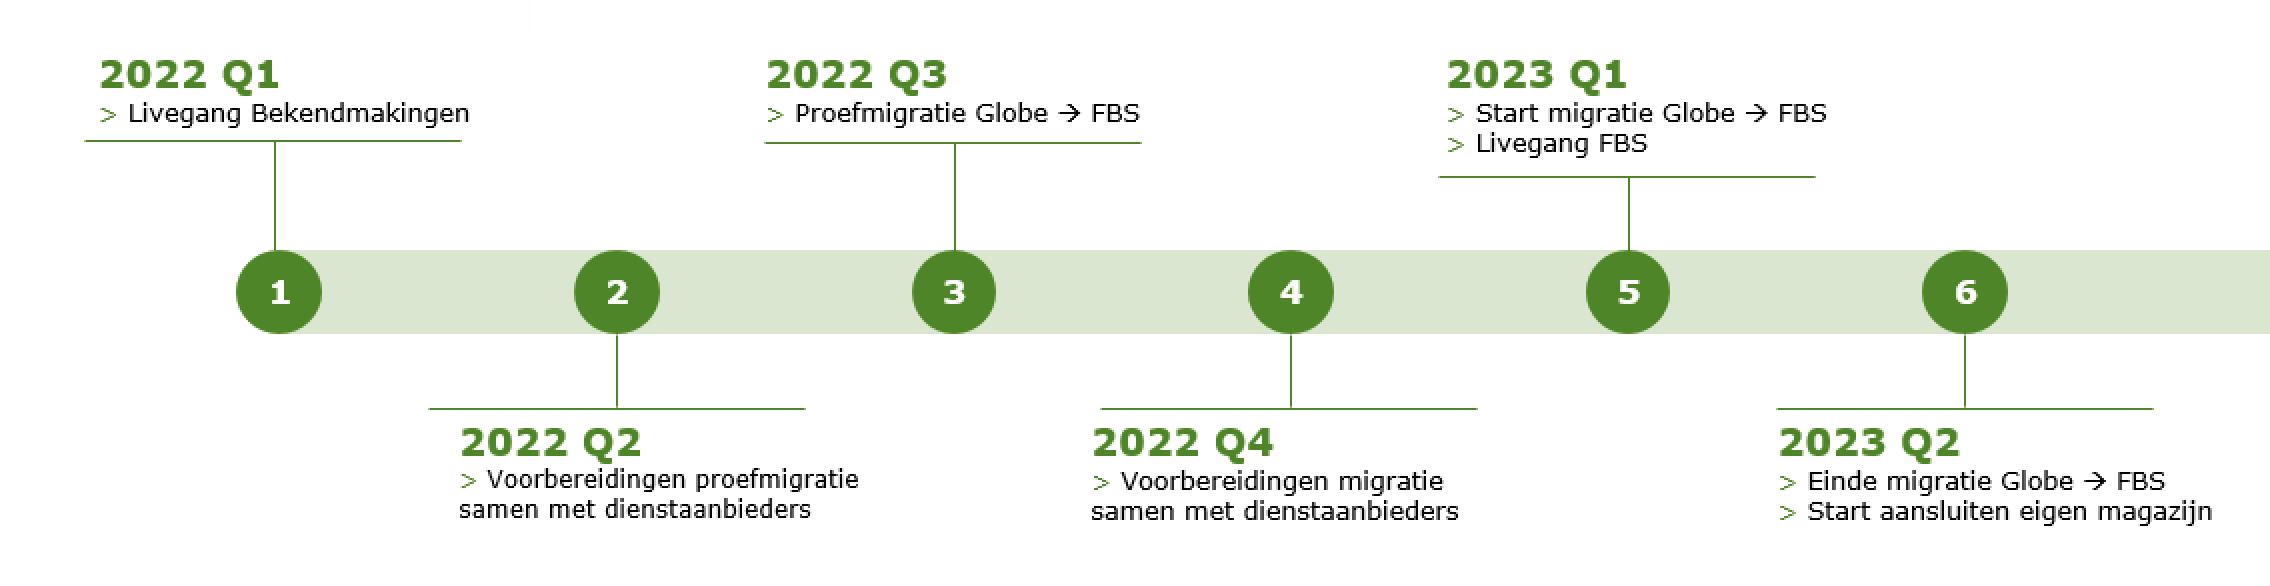 Een schematische weergave van de migratie